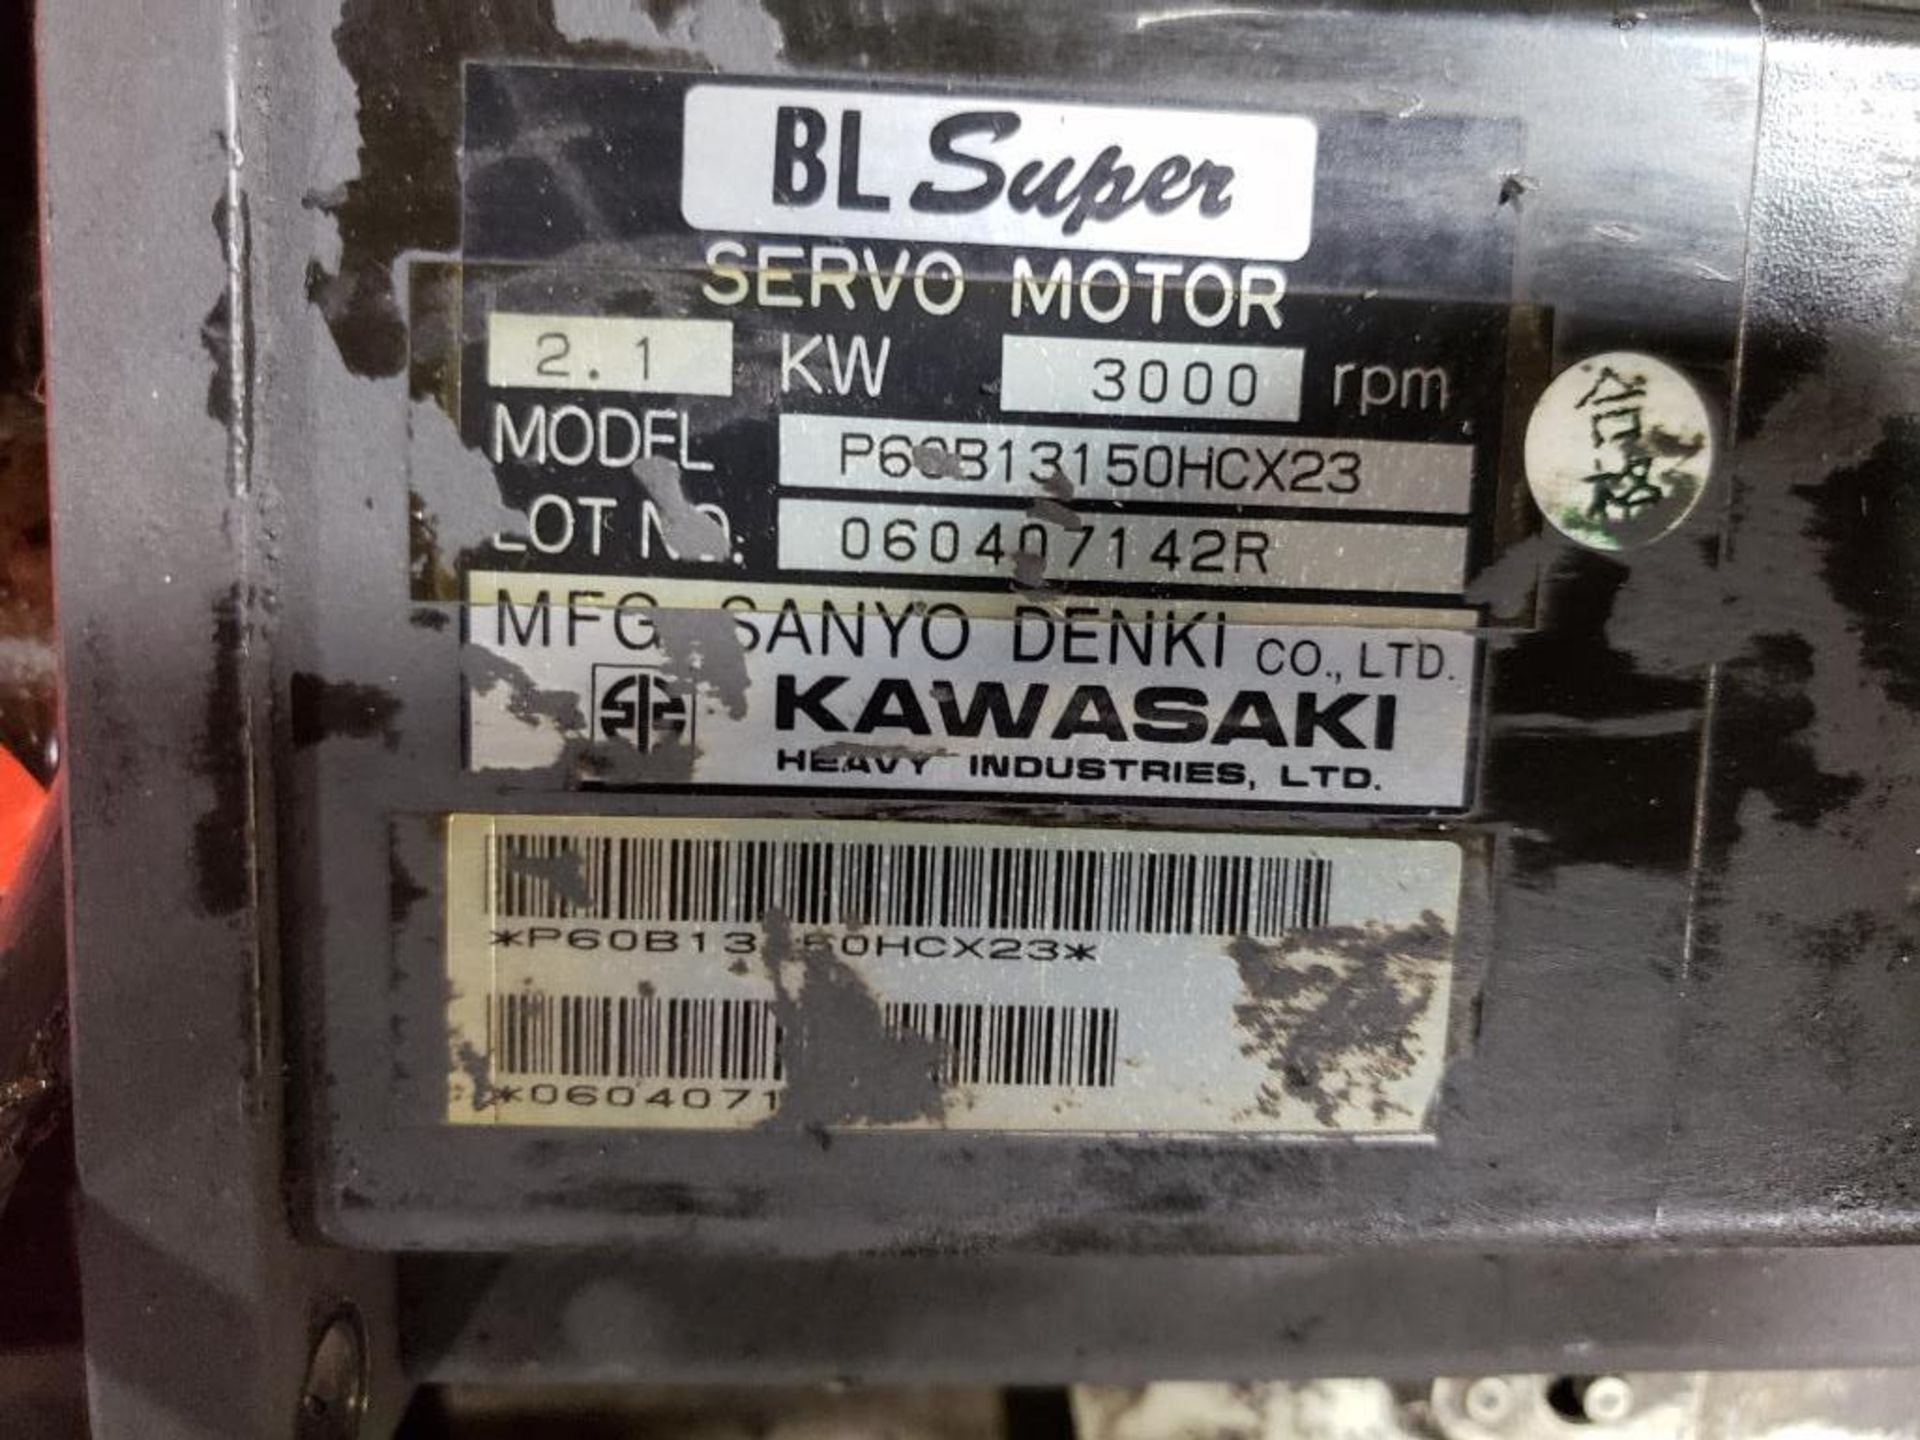 Qty 3 - Kawasaki servo motor. Series BL Super. Model P60B13150HCX23. - Image 3 of 4